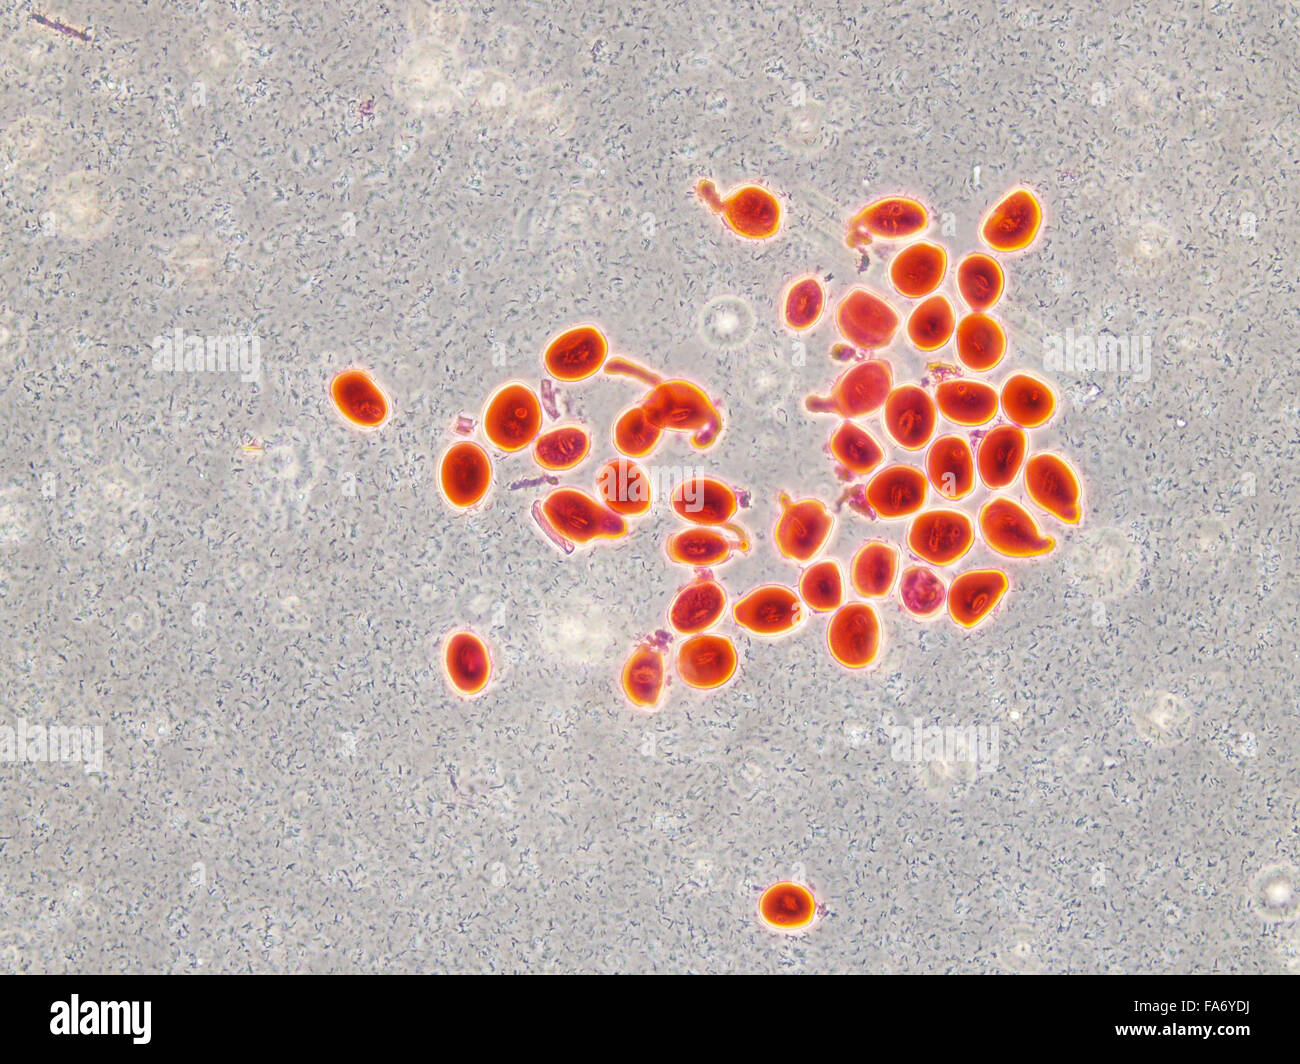 Le immagini di microscopia di tessuto biologico e tessuto vegetale Foto Stock